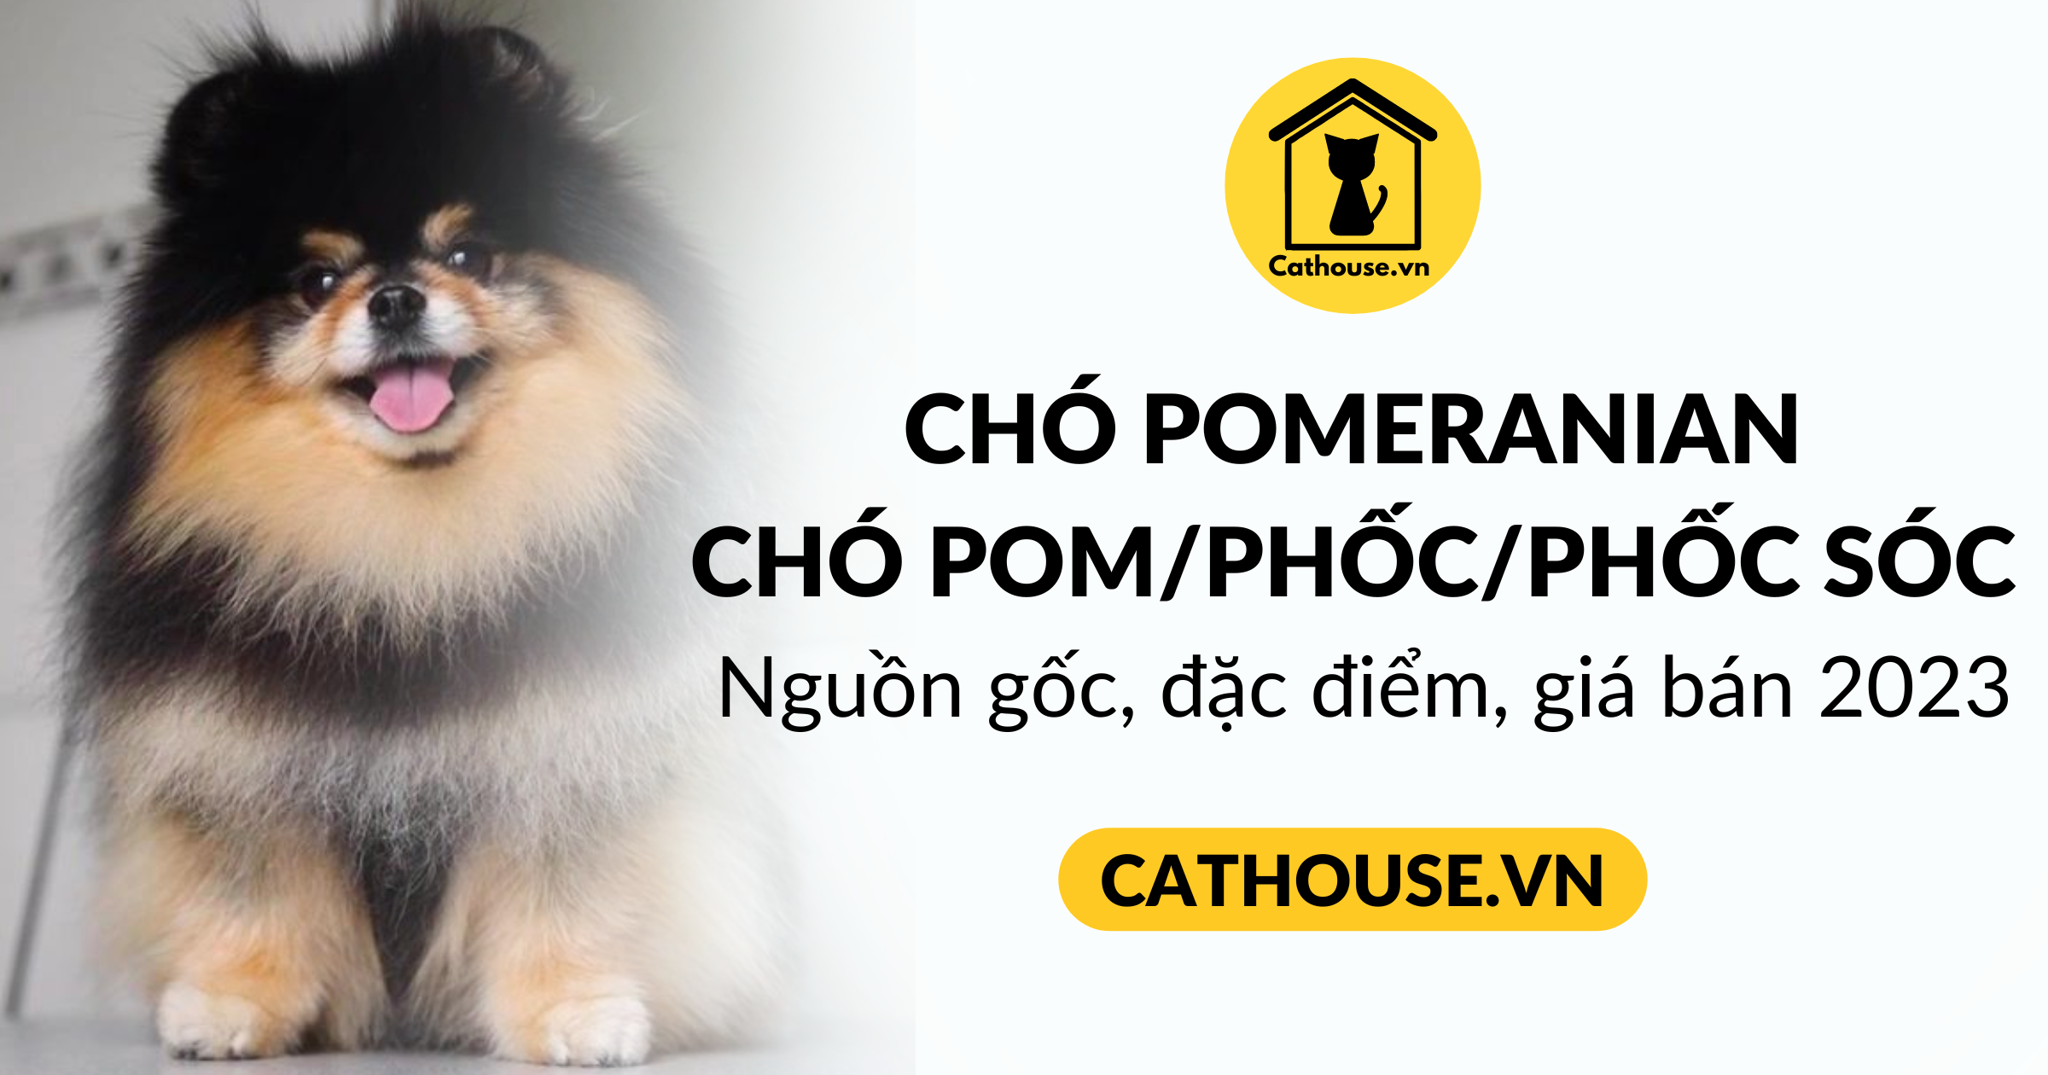 Chó Phốc sóc (Pomeranian): Nguồn gốc, đặc điểm, giá bán 2023